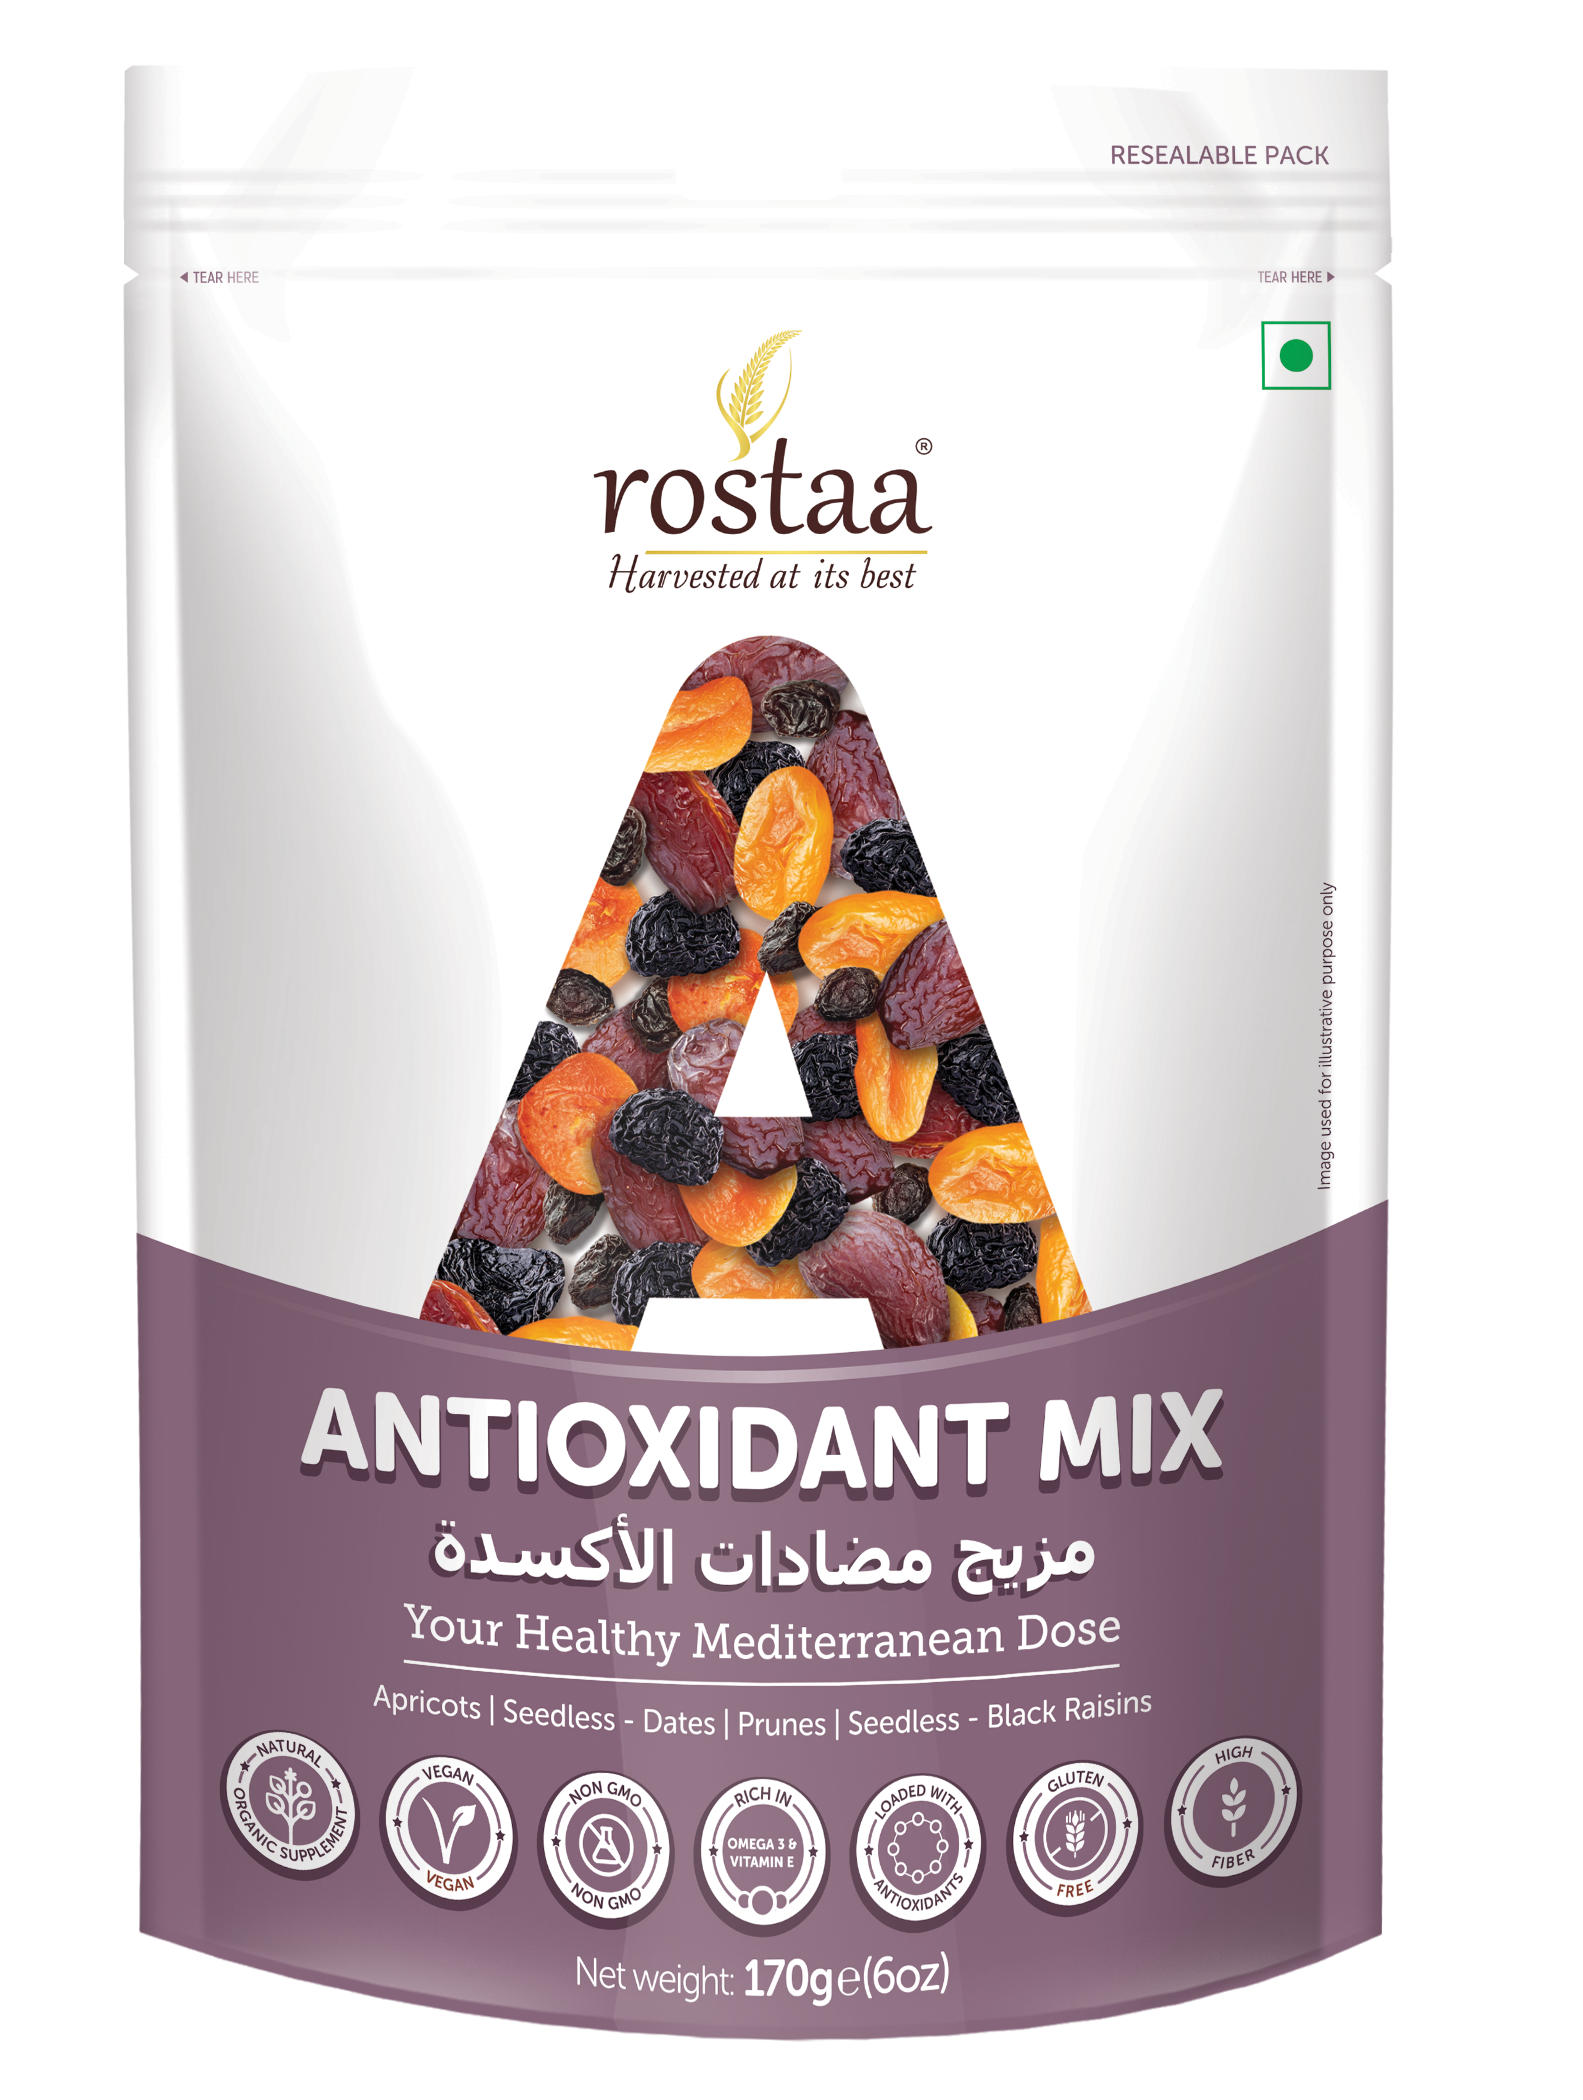 Antioxidant-Mix-170g-FOP